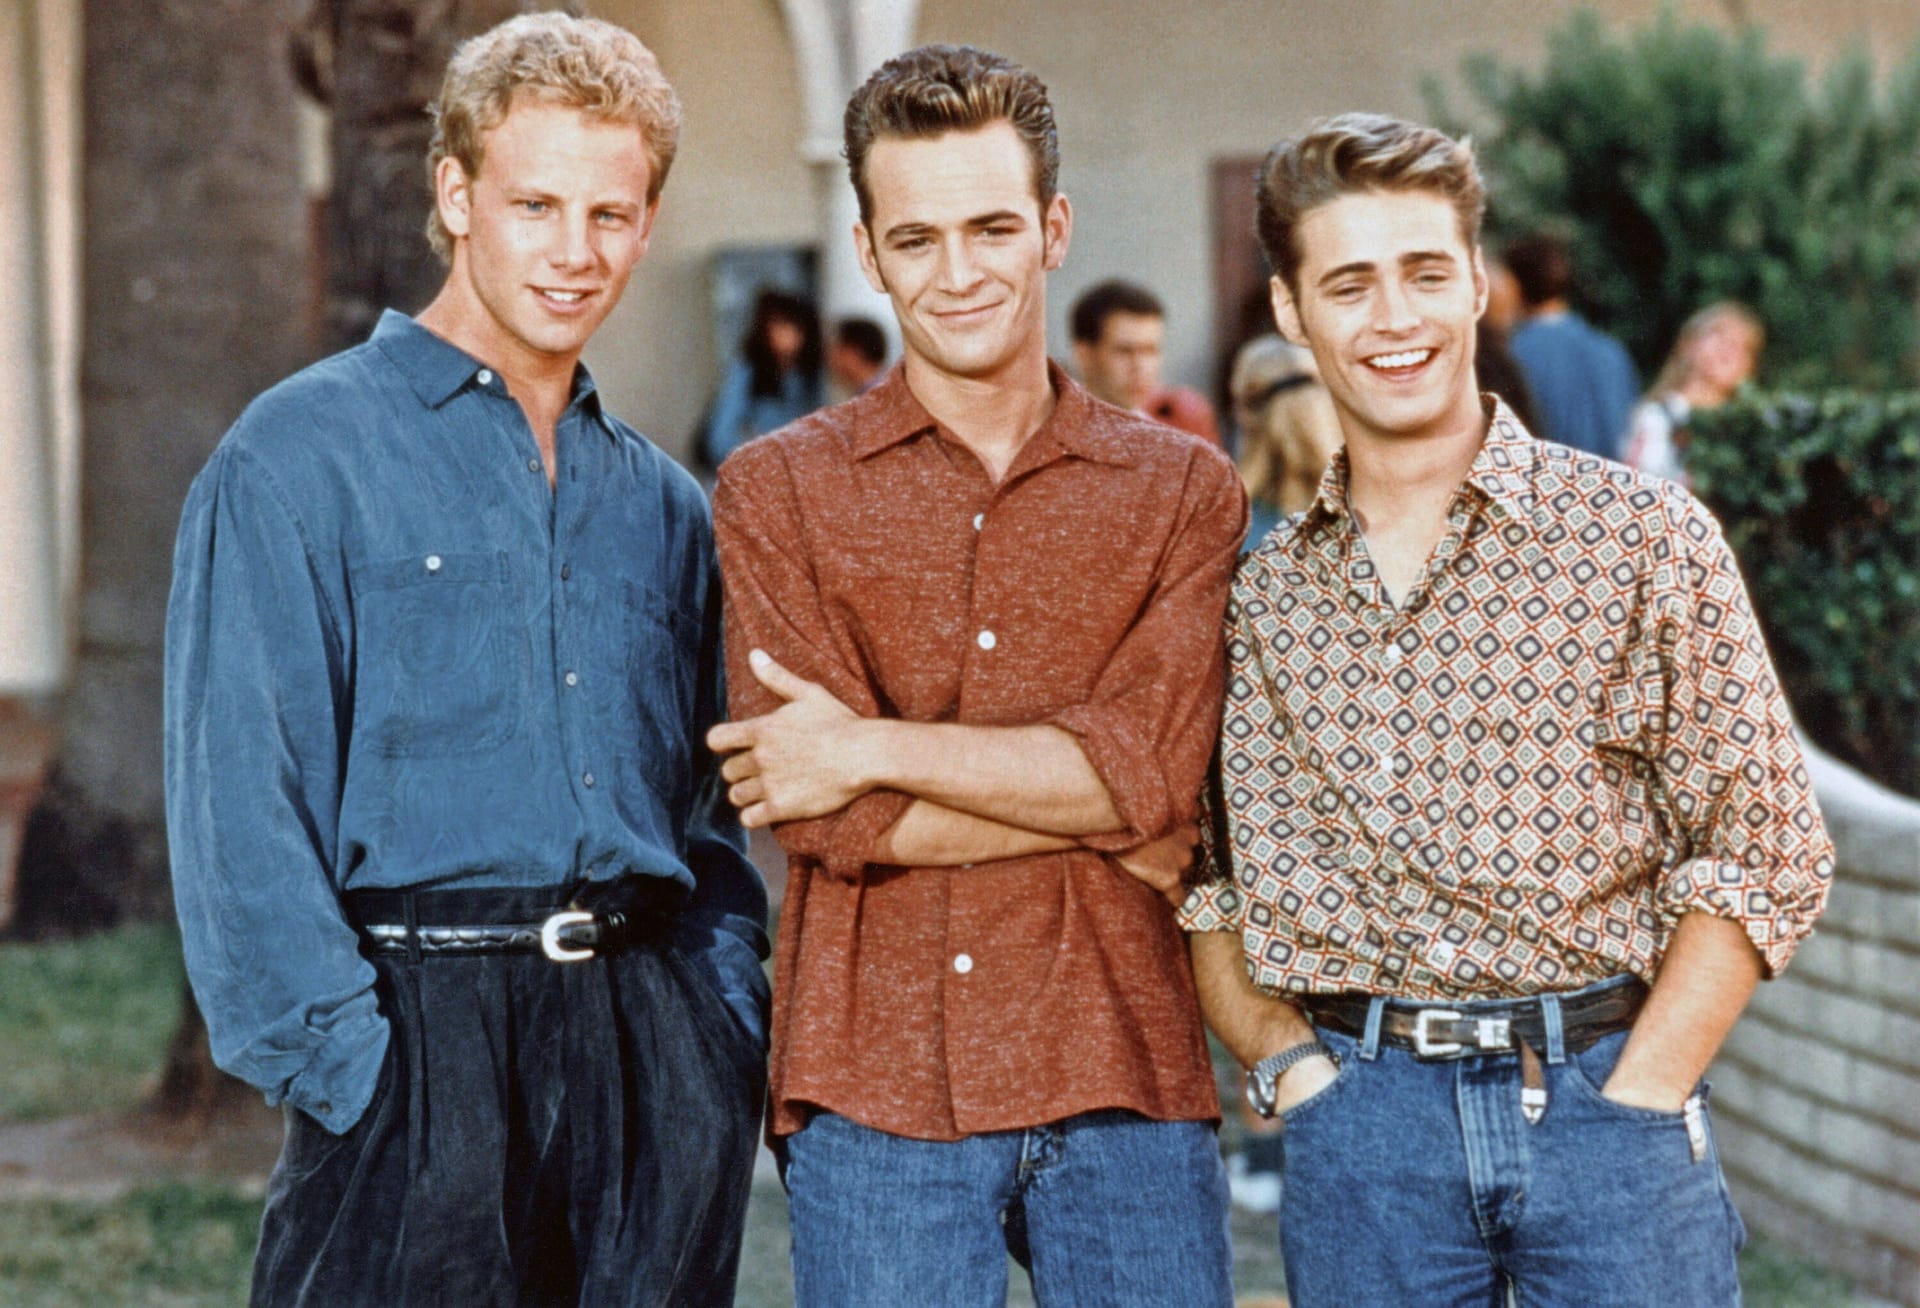 Von links nach rechts: Ian Ziering, Luke Perry, Jason Priestley in "Beverly Hills 902010"